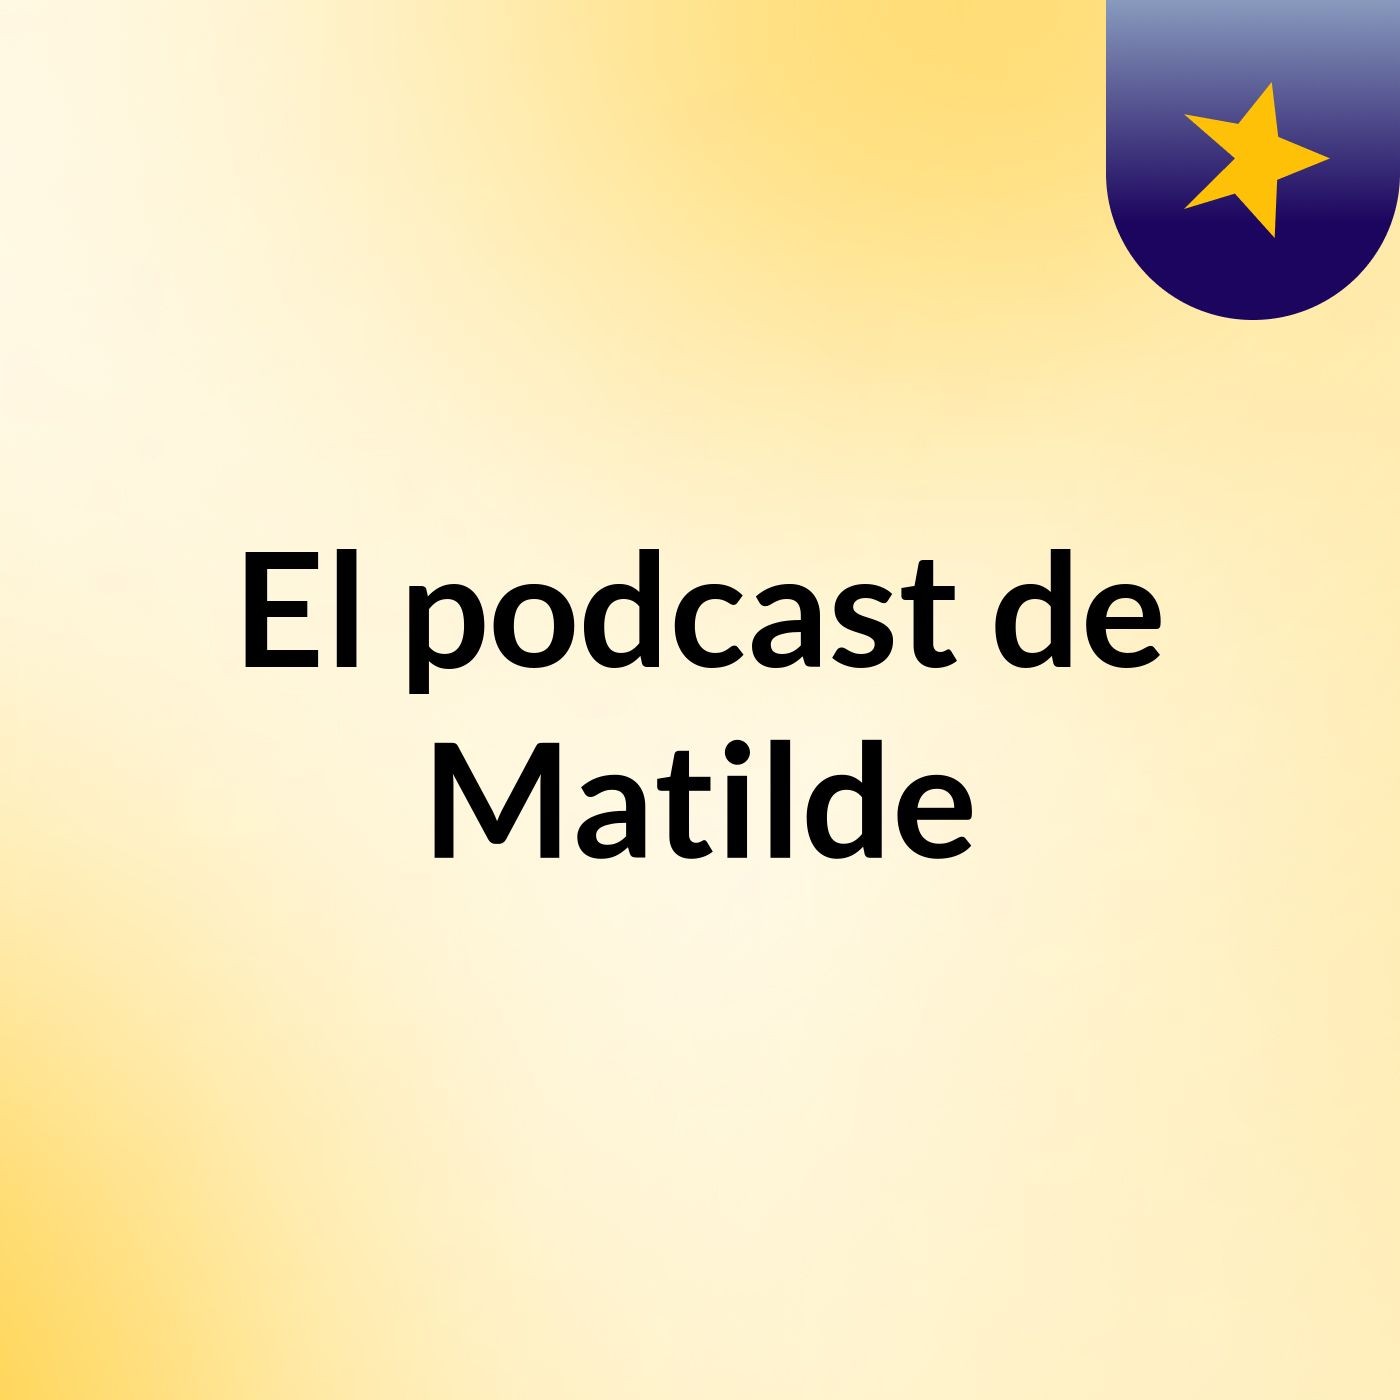 El podcast de Matilde